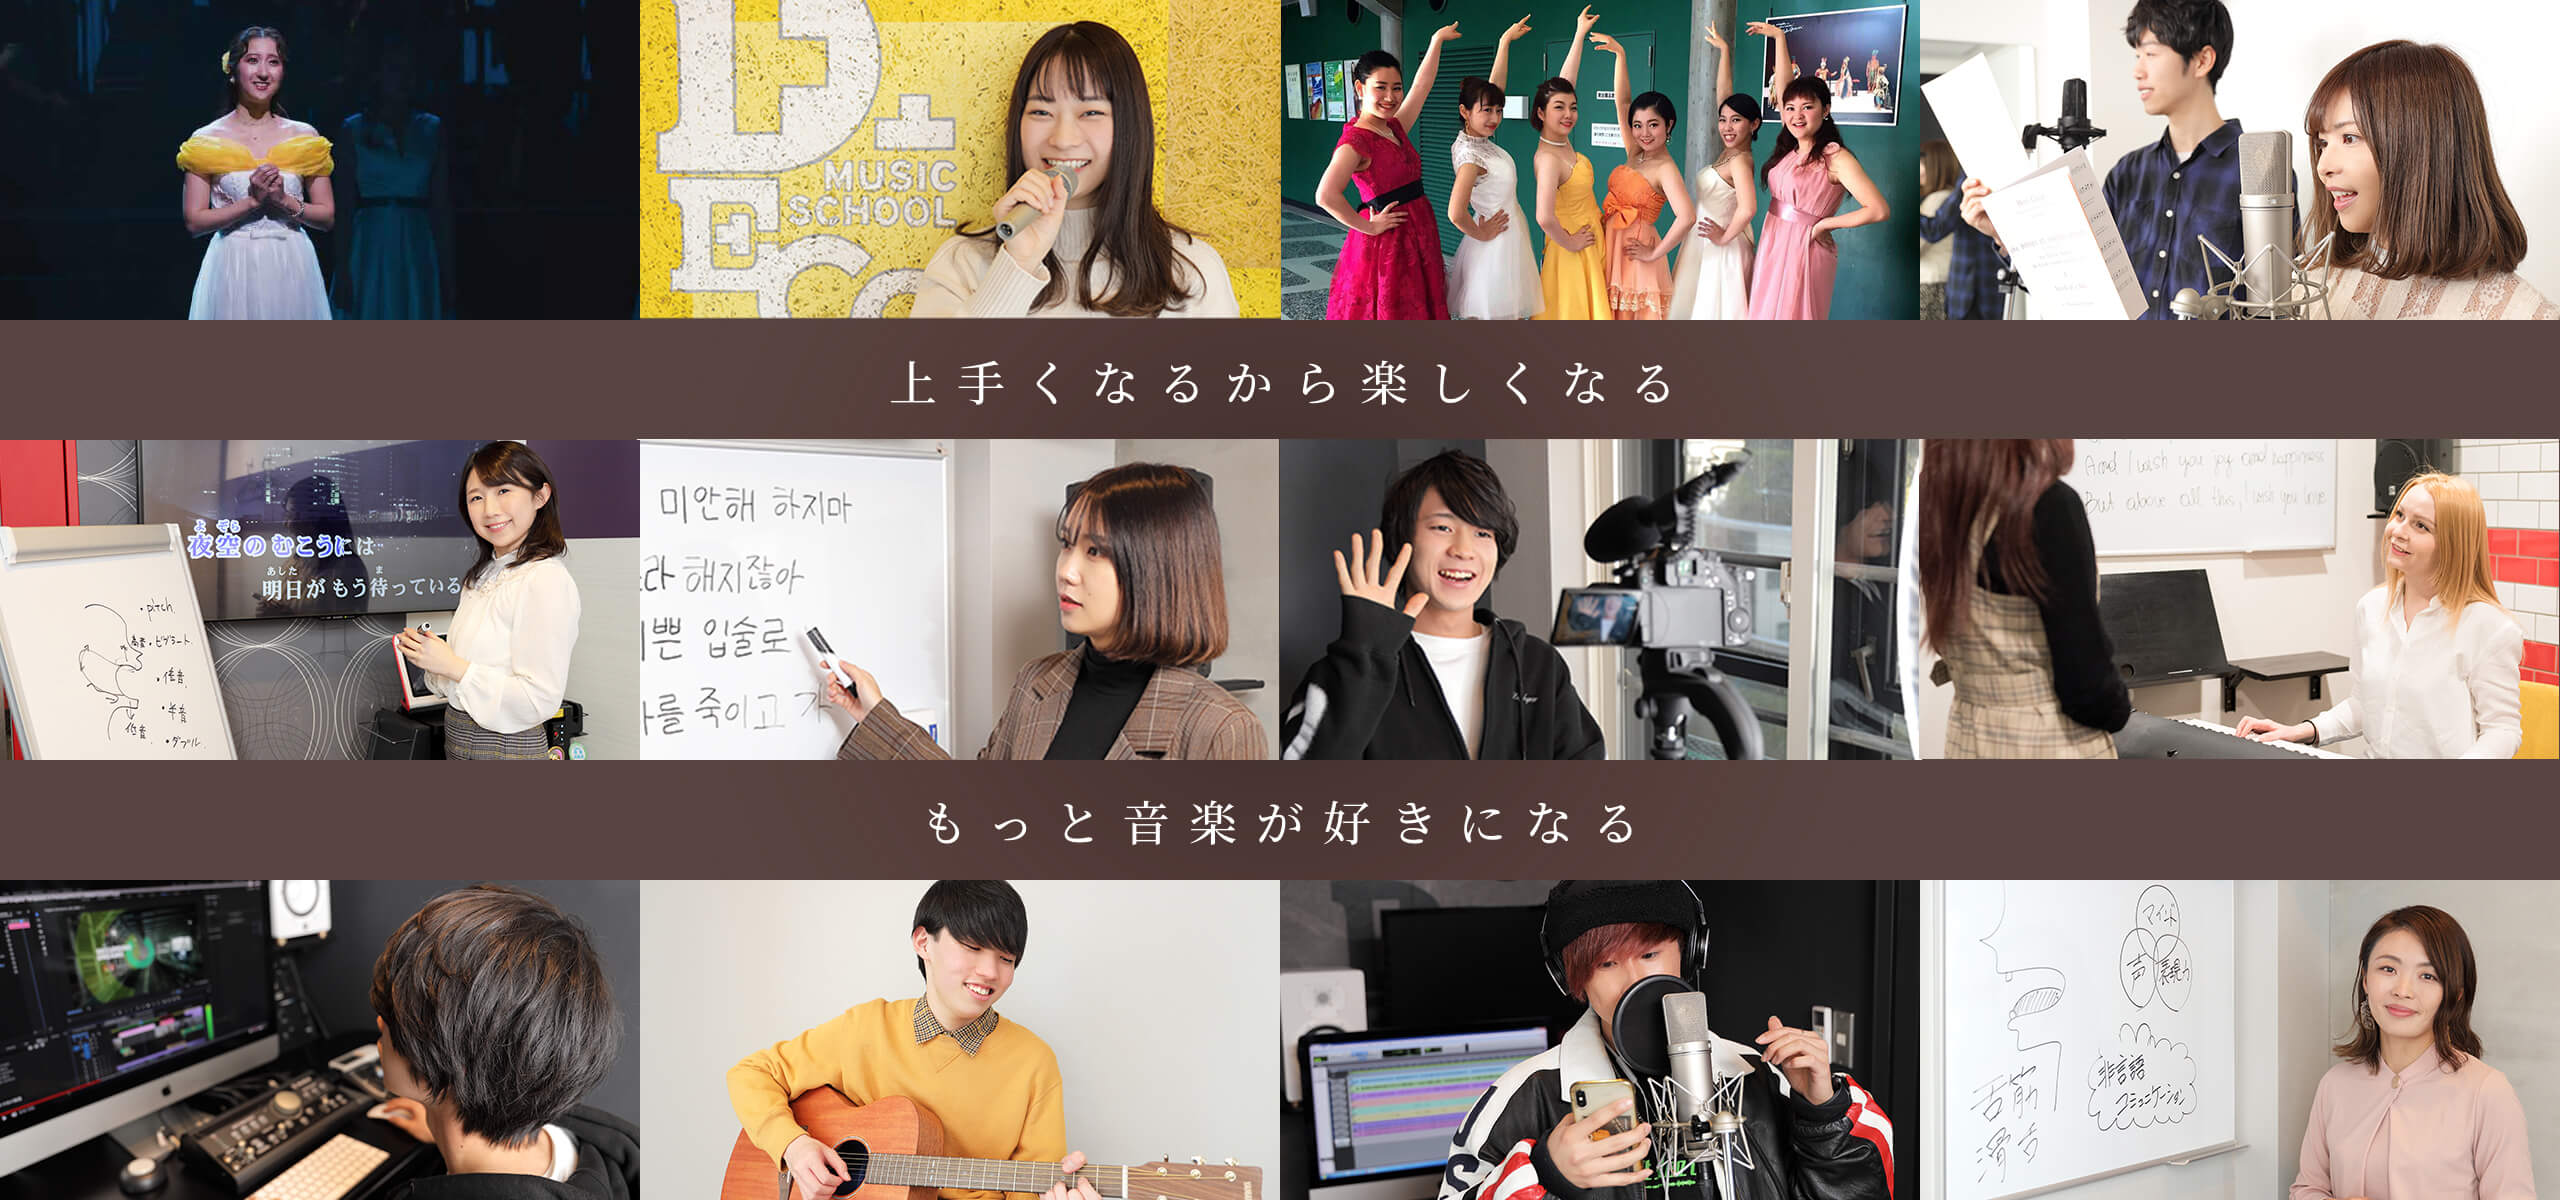 立川の人気ボイトレ教室DECO MUSIC SCHOOL